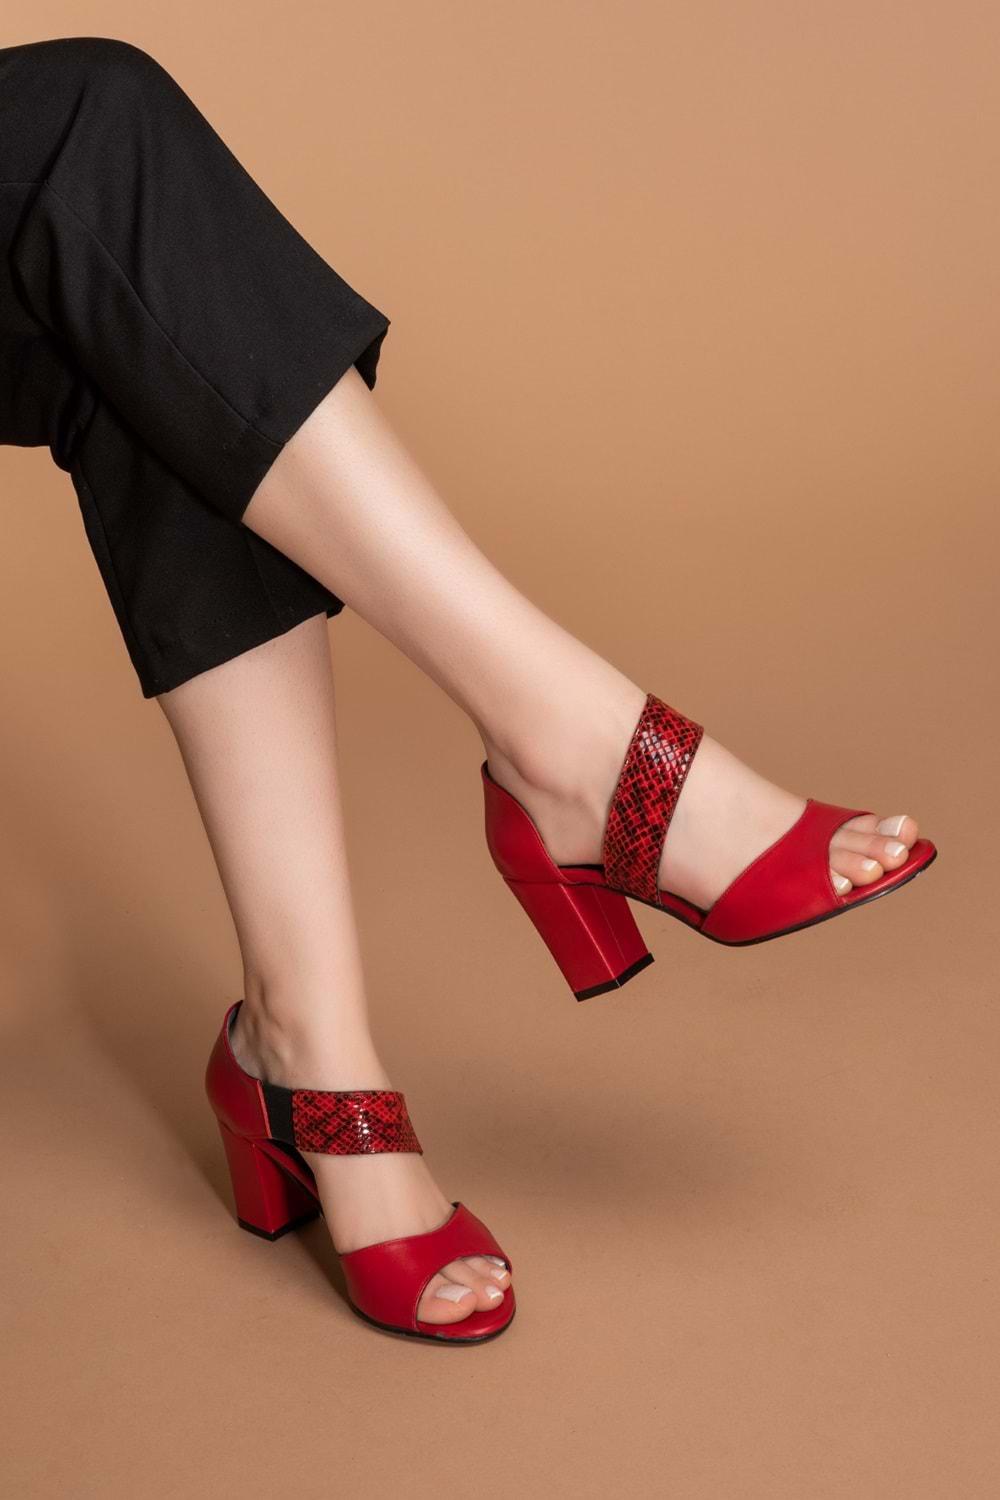 Gondol Hakiki Deri Yılan Desen Detaylı Topuklu Ayakkabı şhn.220 - kırmızı - 35